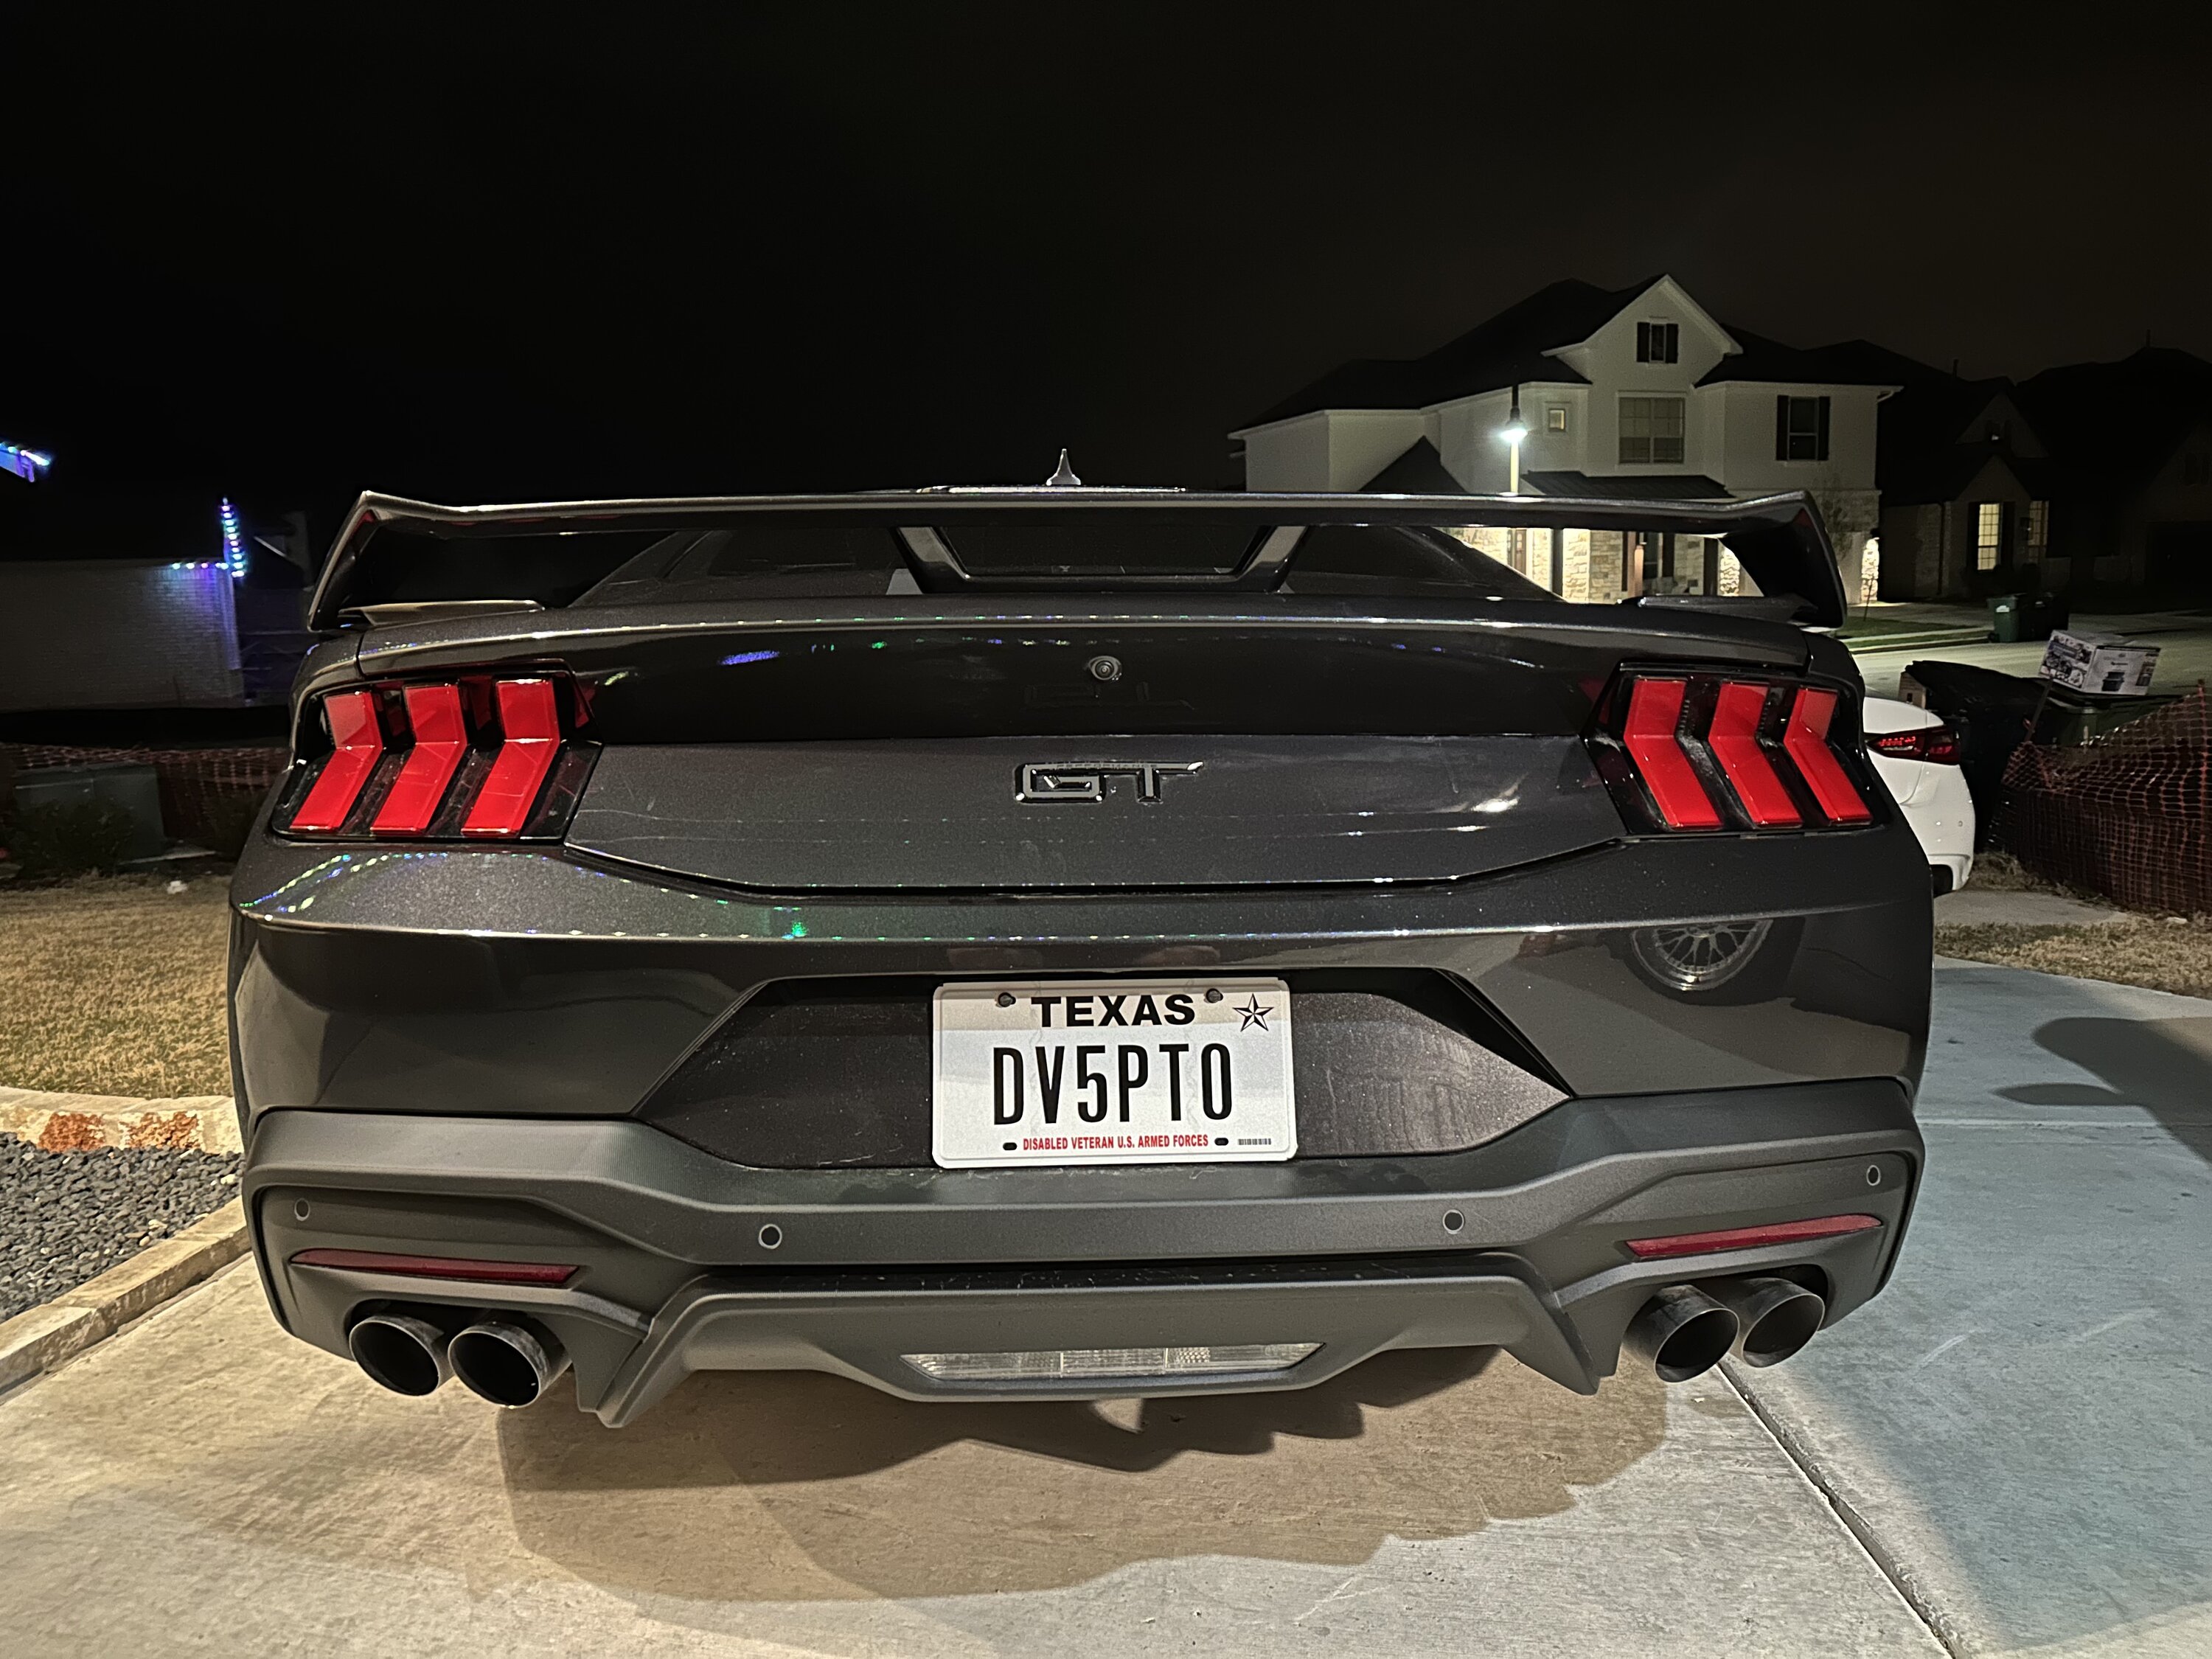 S650 Mustang Vanity / custom license plate ideas? IMG_4951